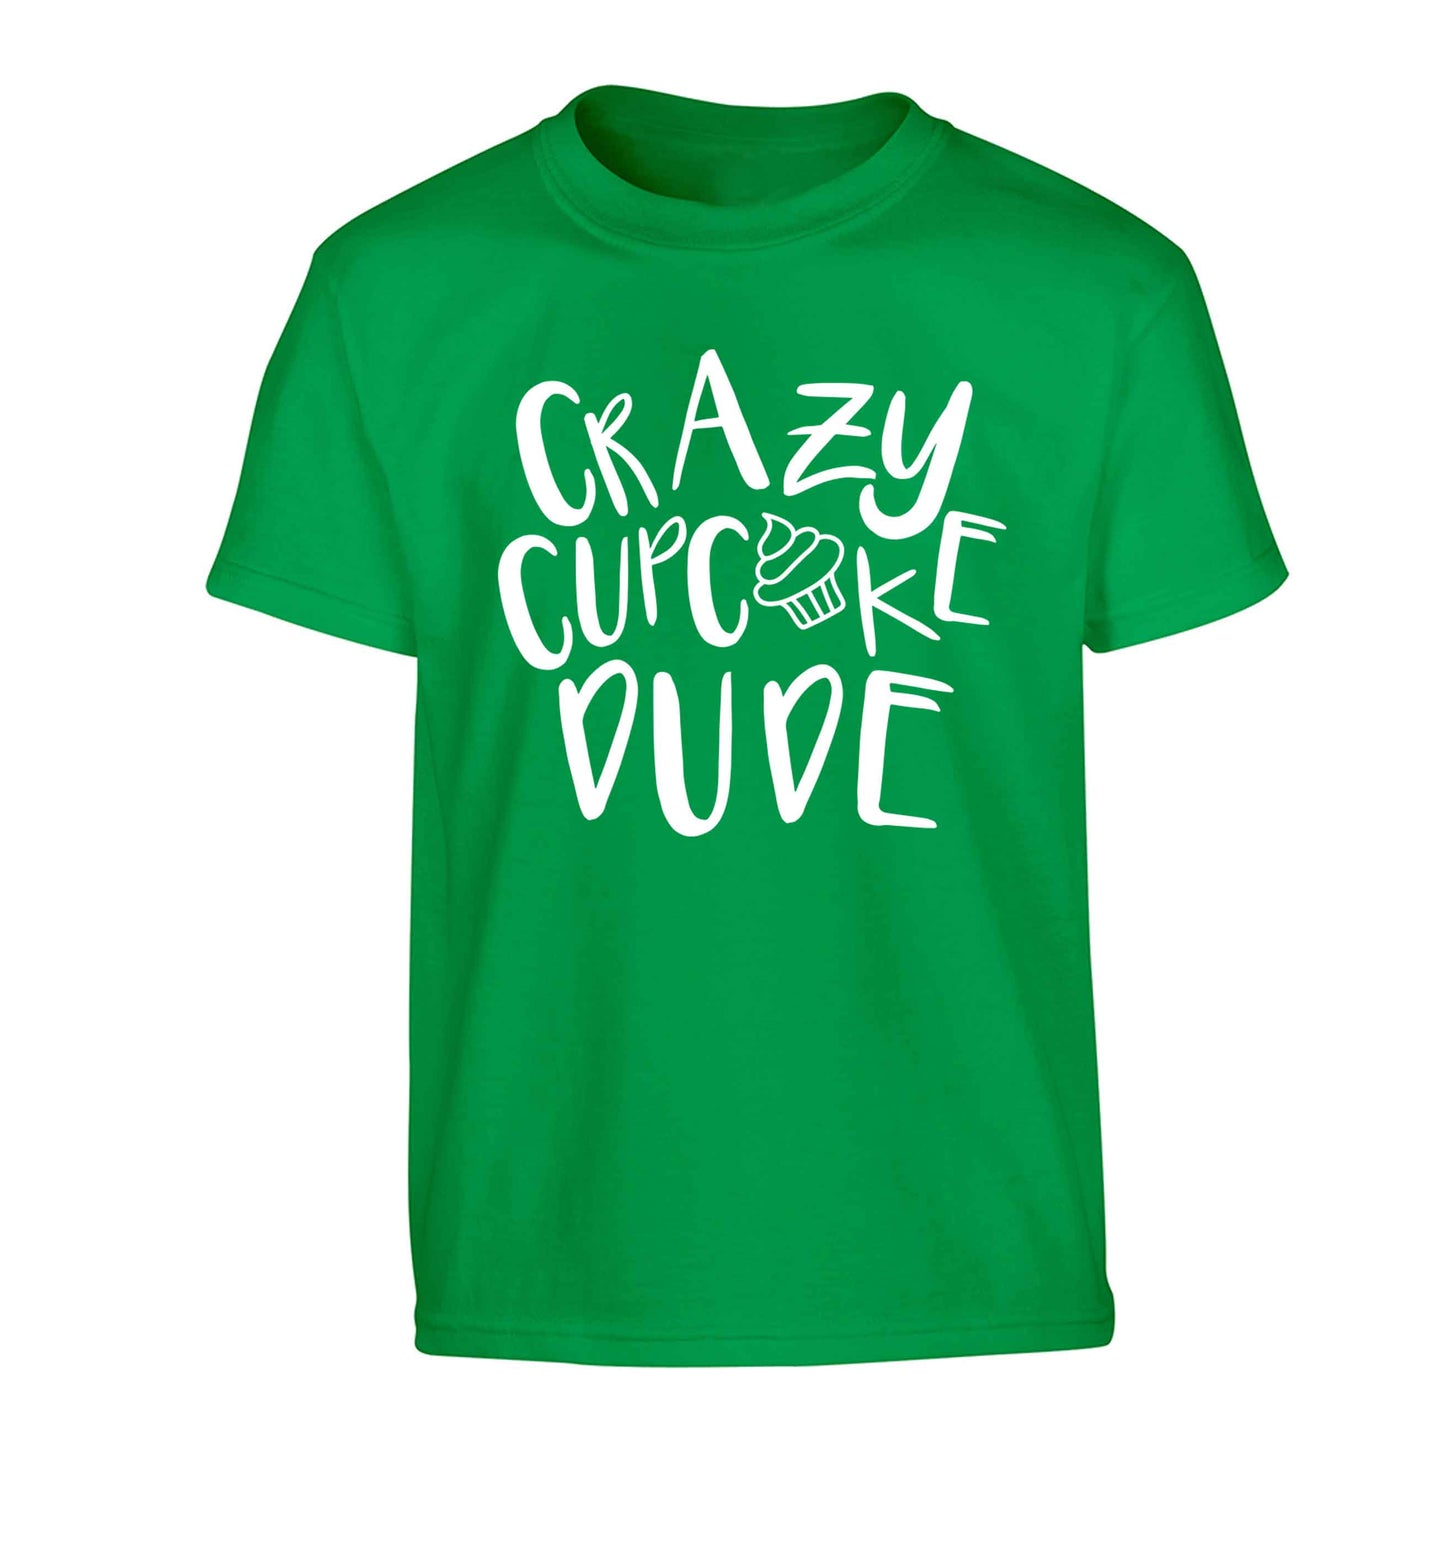 Crazy cupcake dude Children's green Tshirt 12-13 Years